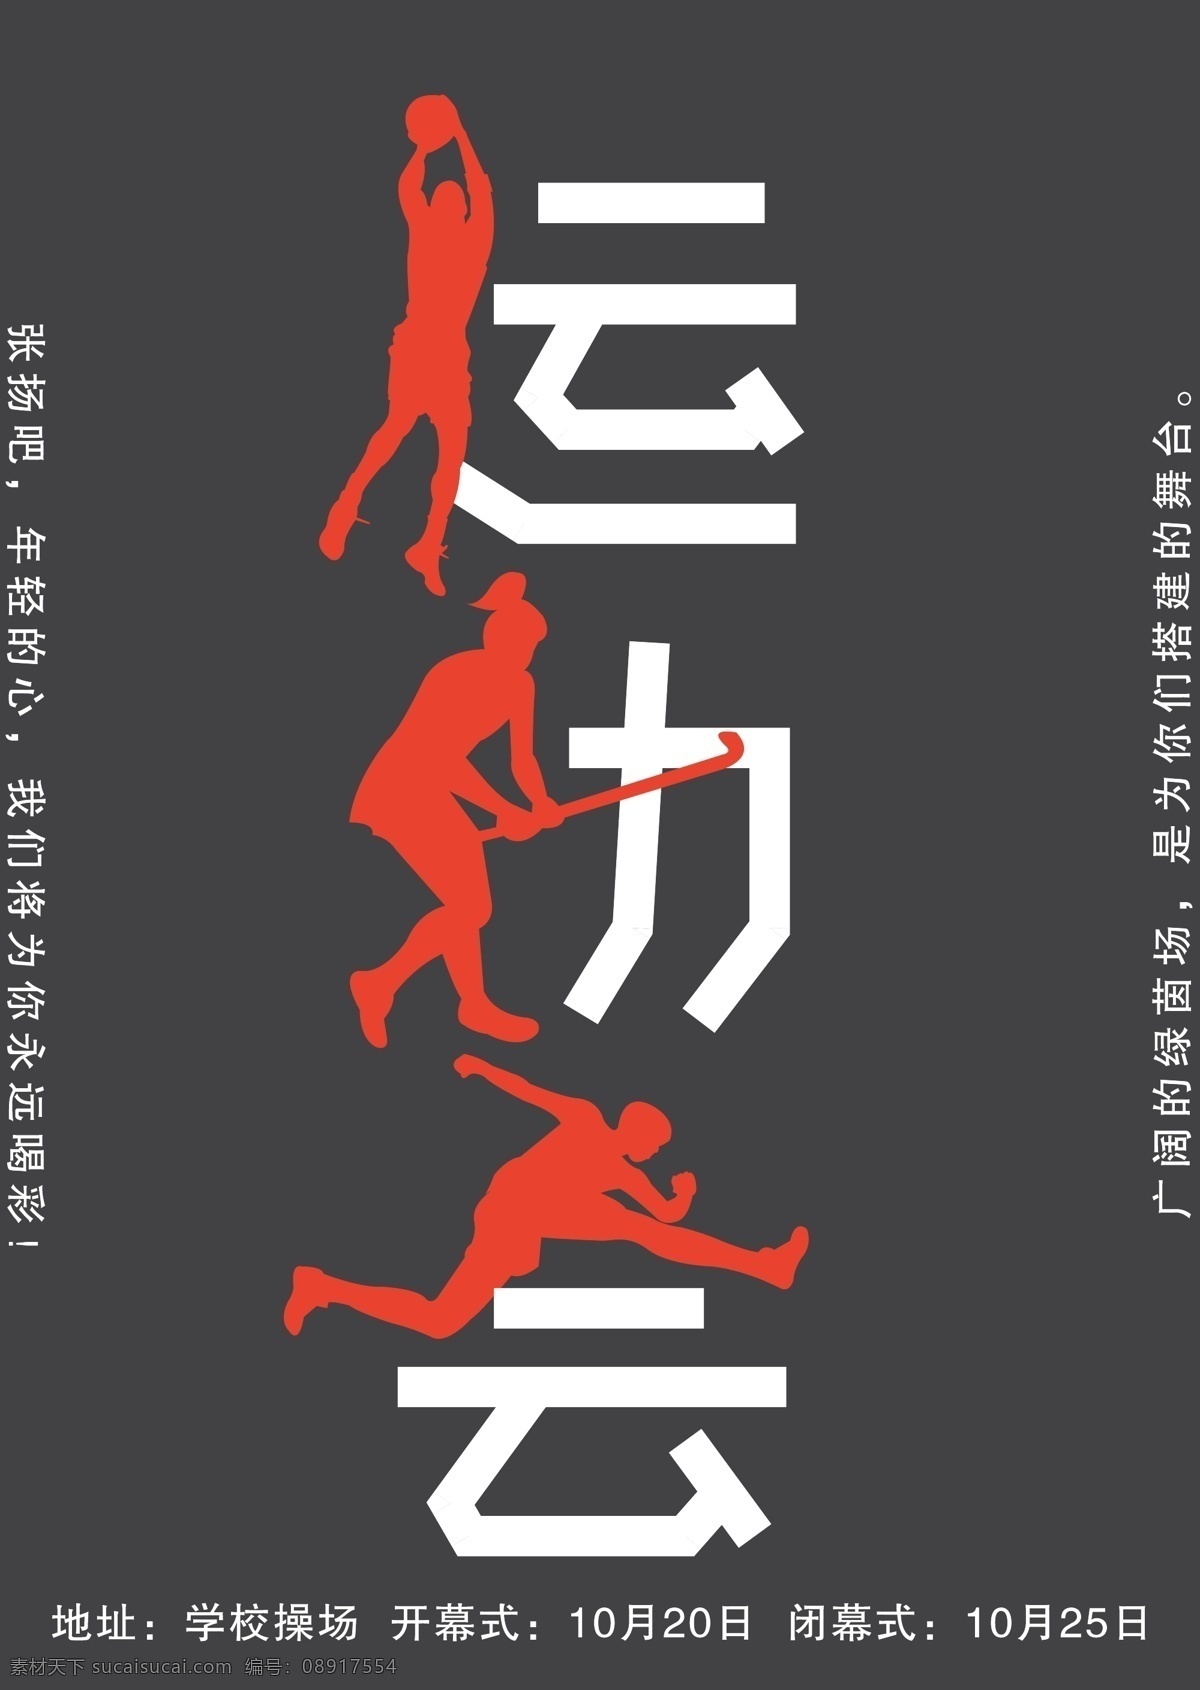 校园 运动会 体育 海报 字体设计 青春 运动